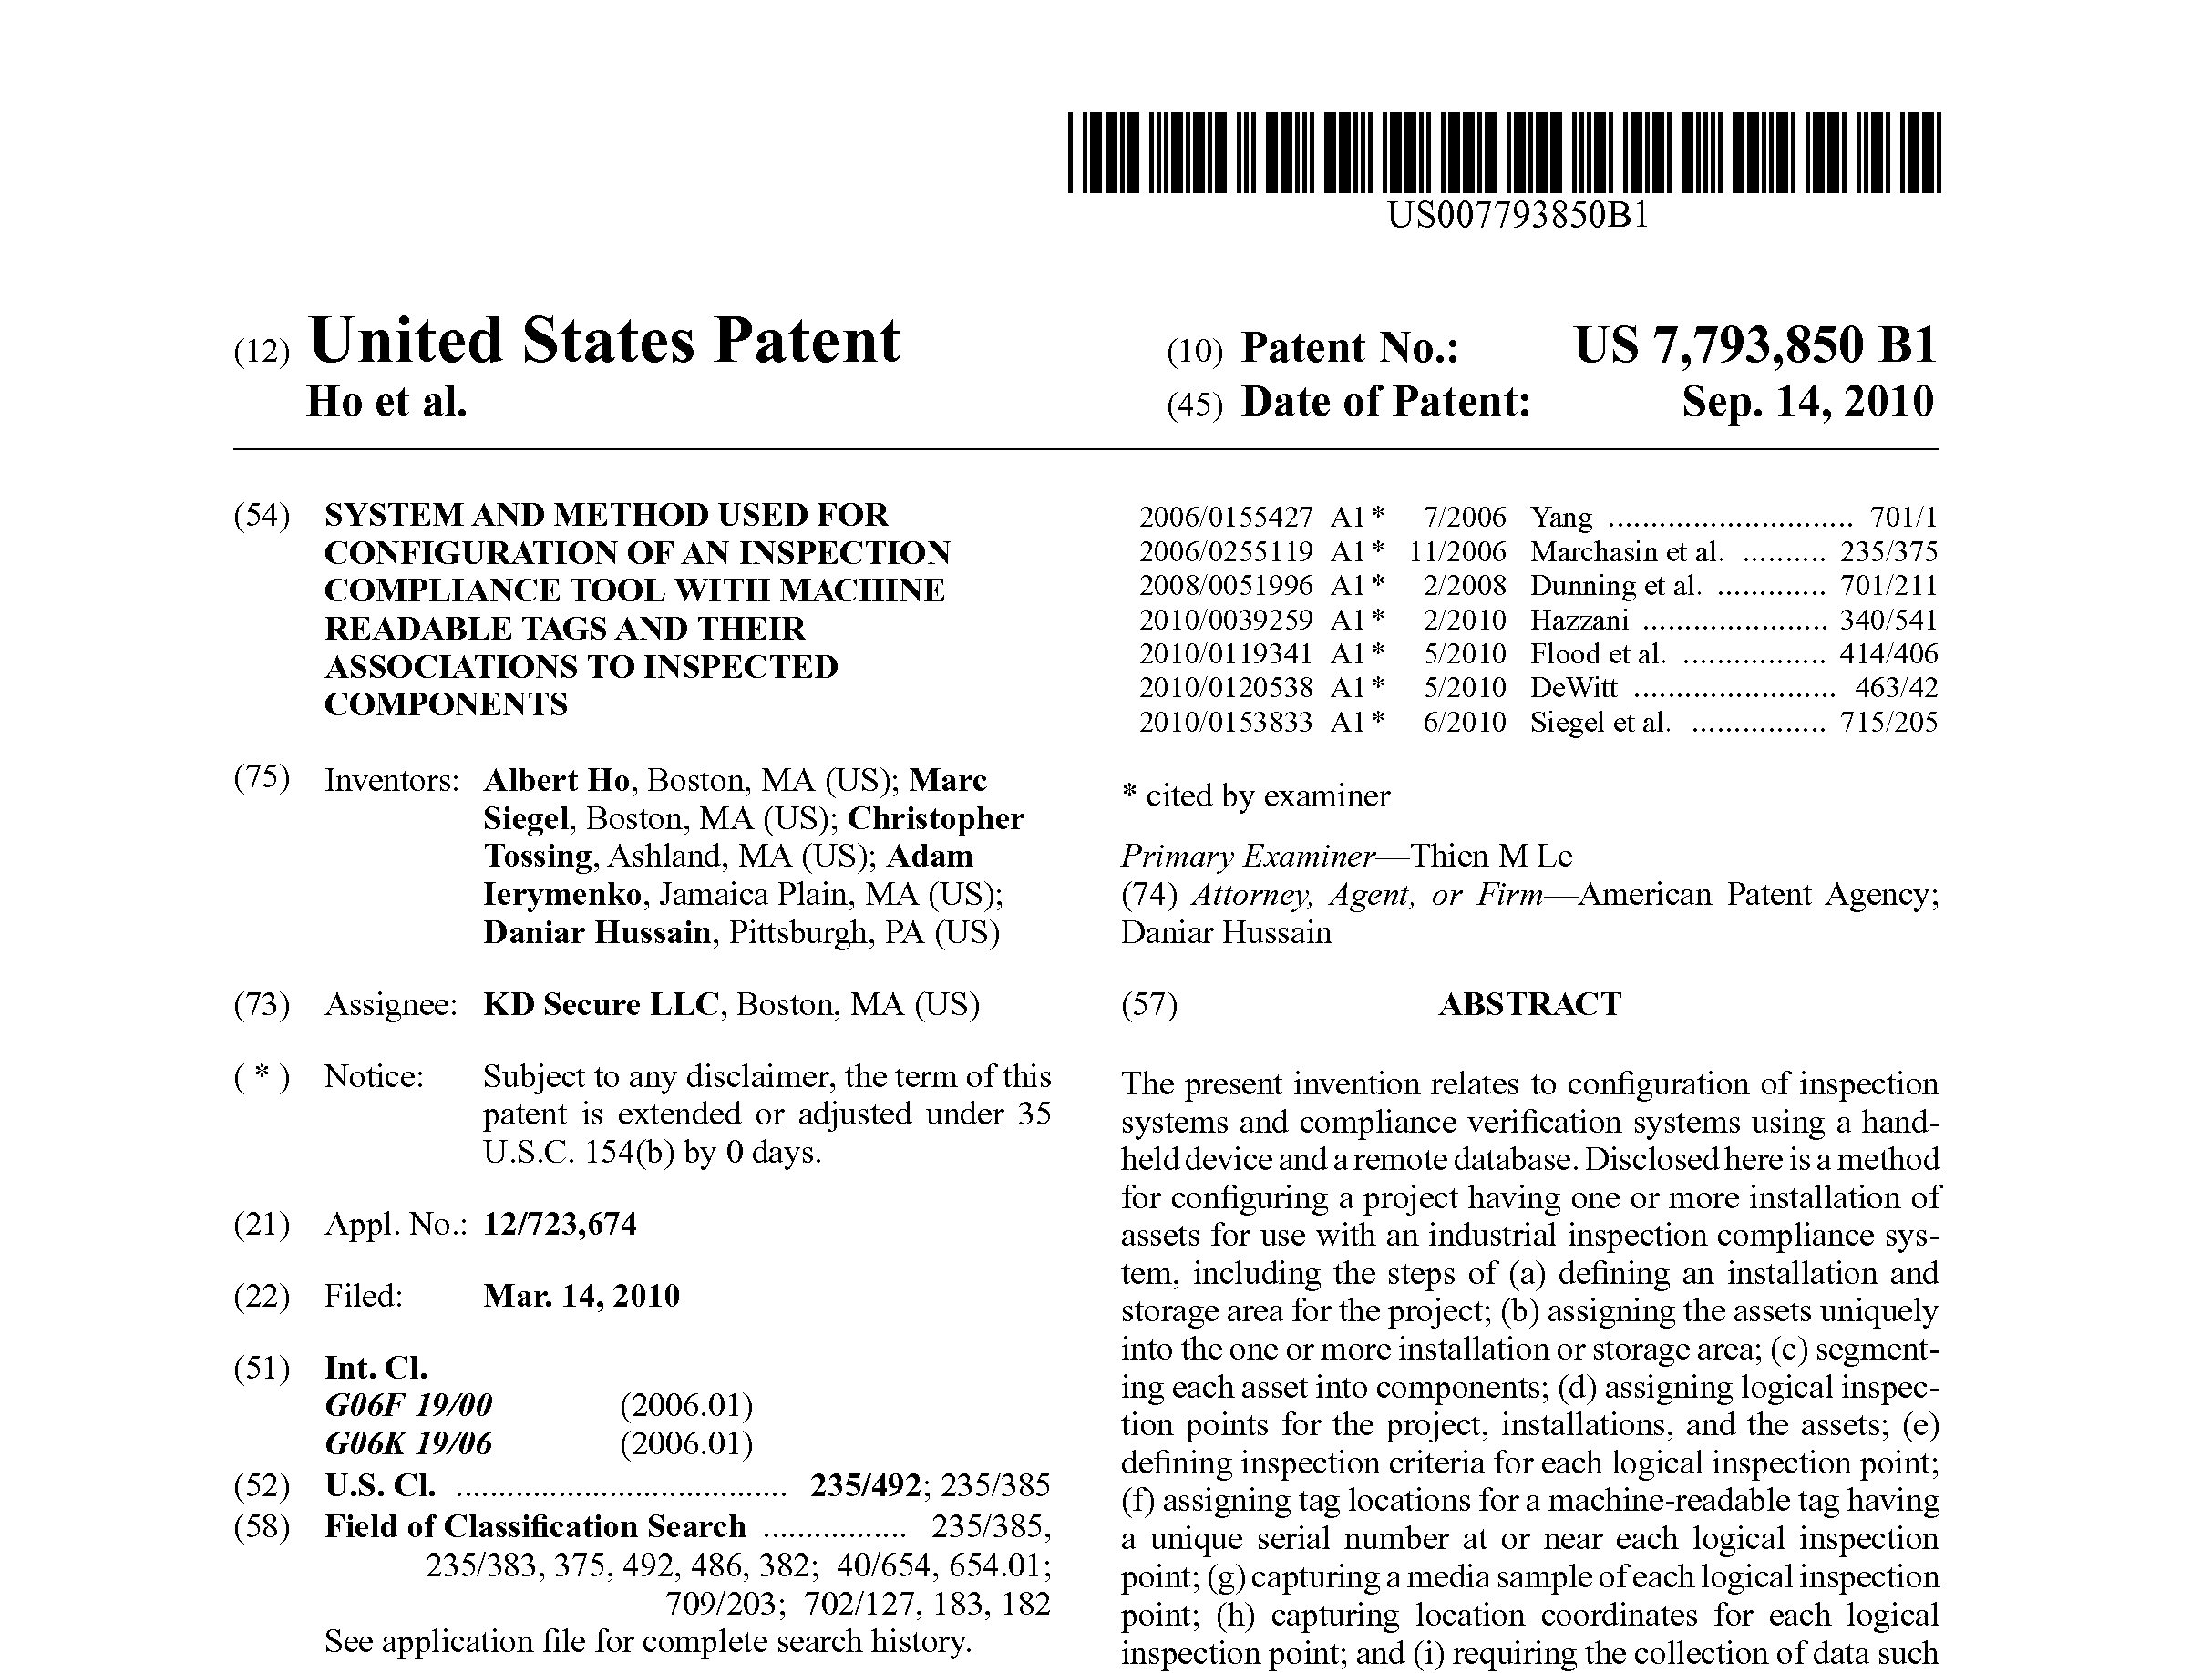 US Patent 7,793,850